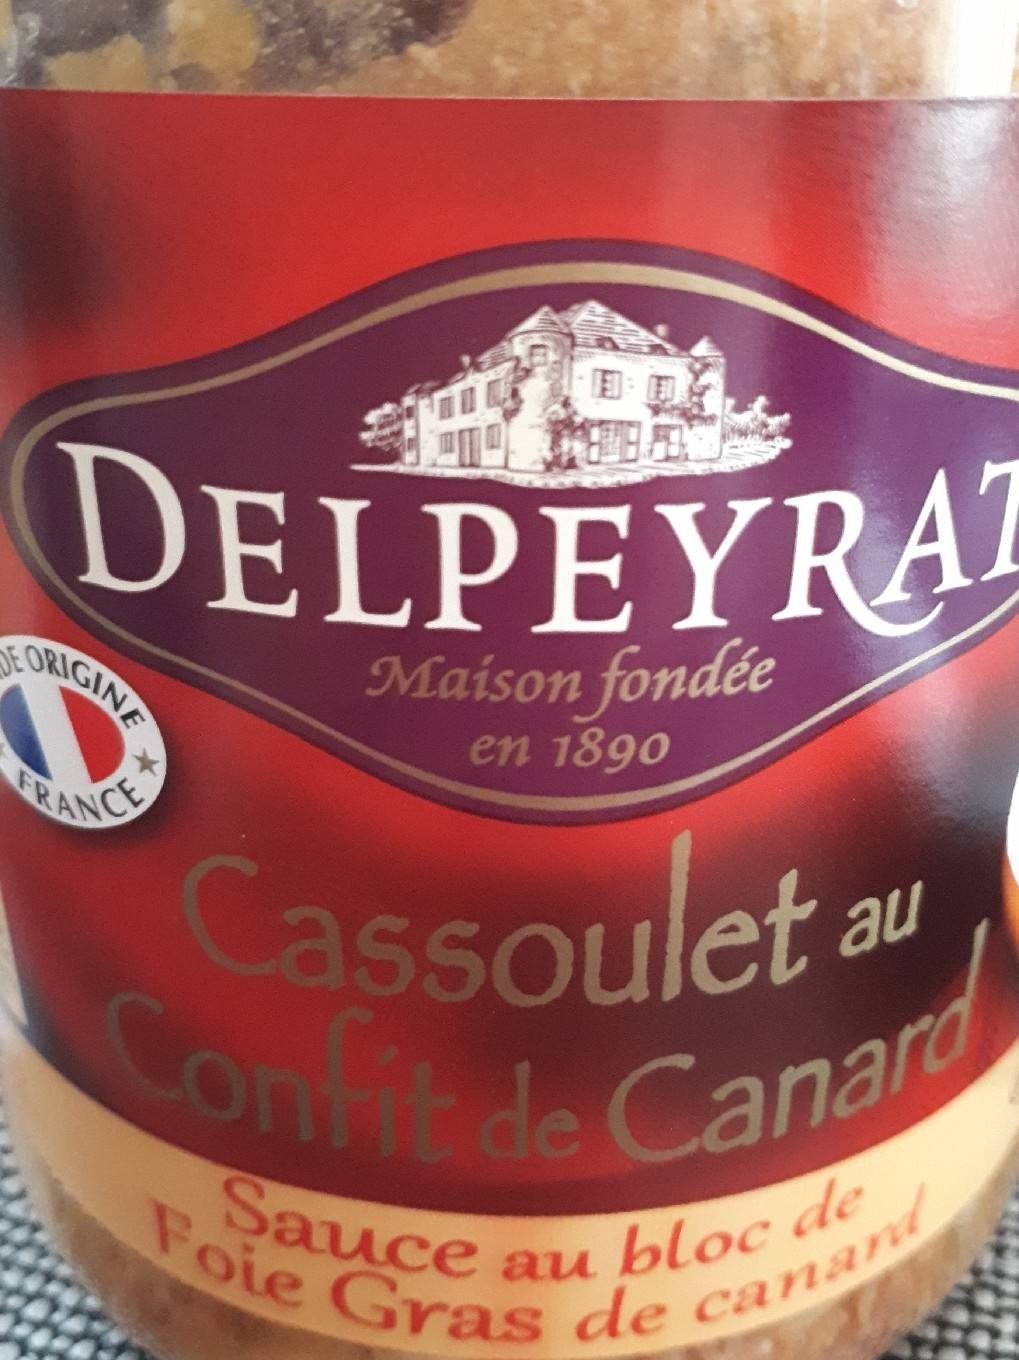 Cassoulet au confit de canard sauce au foie gras - Tableau nutritionnel